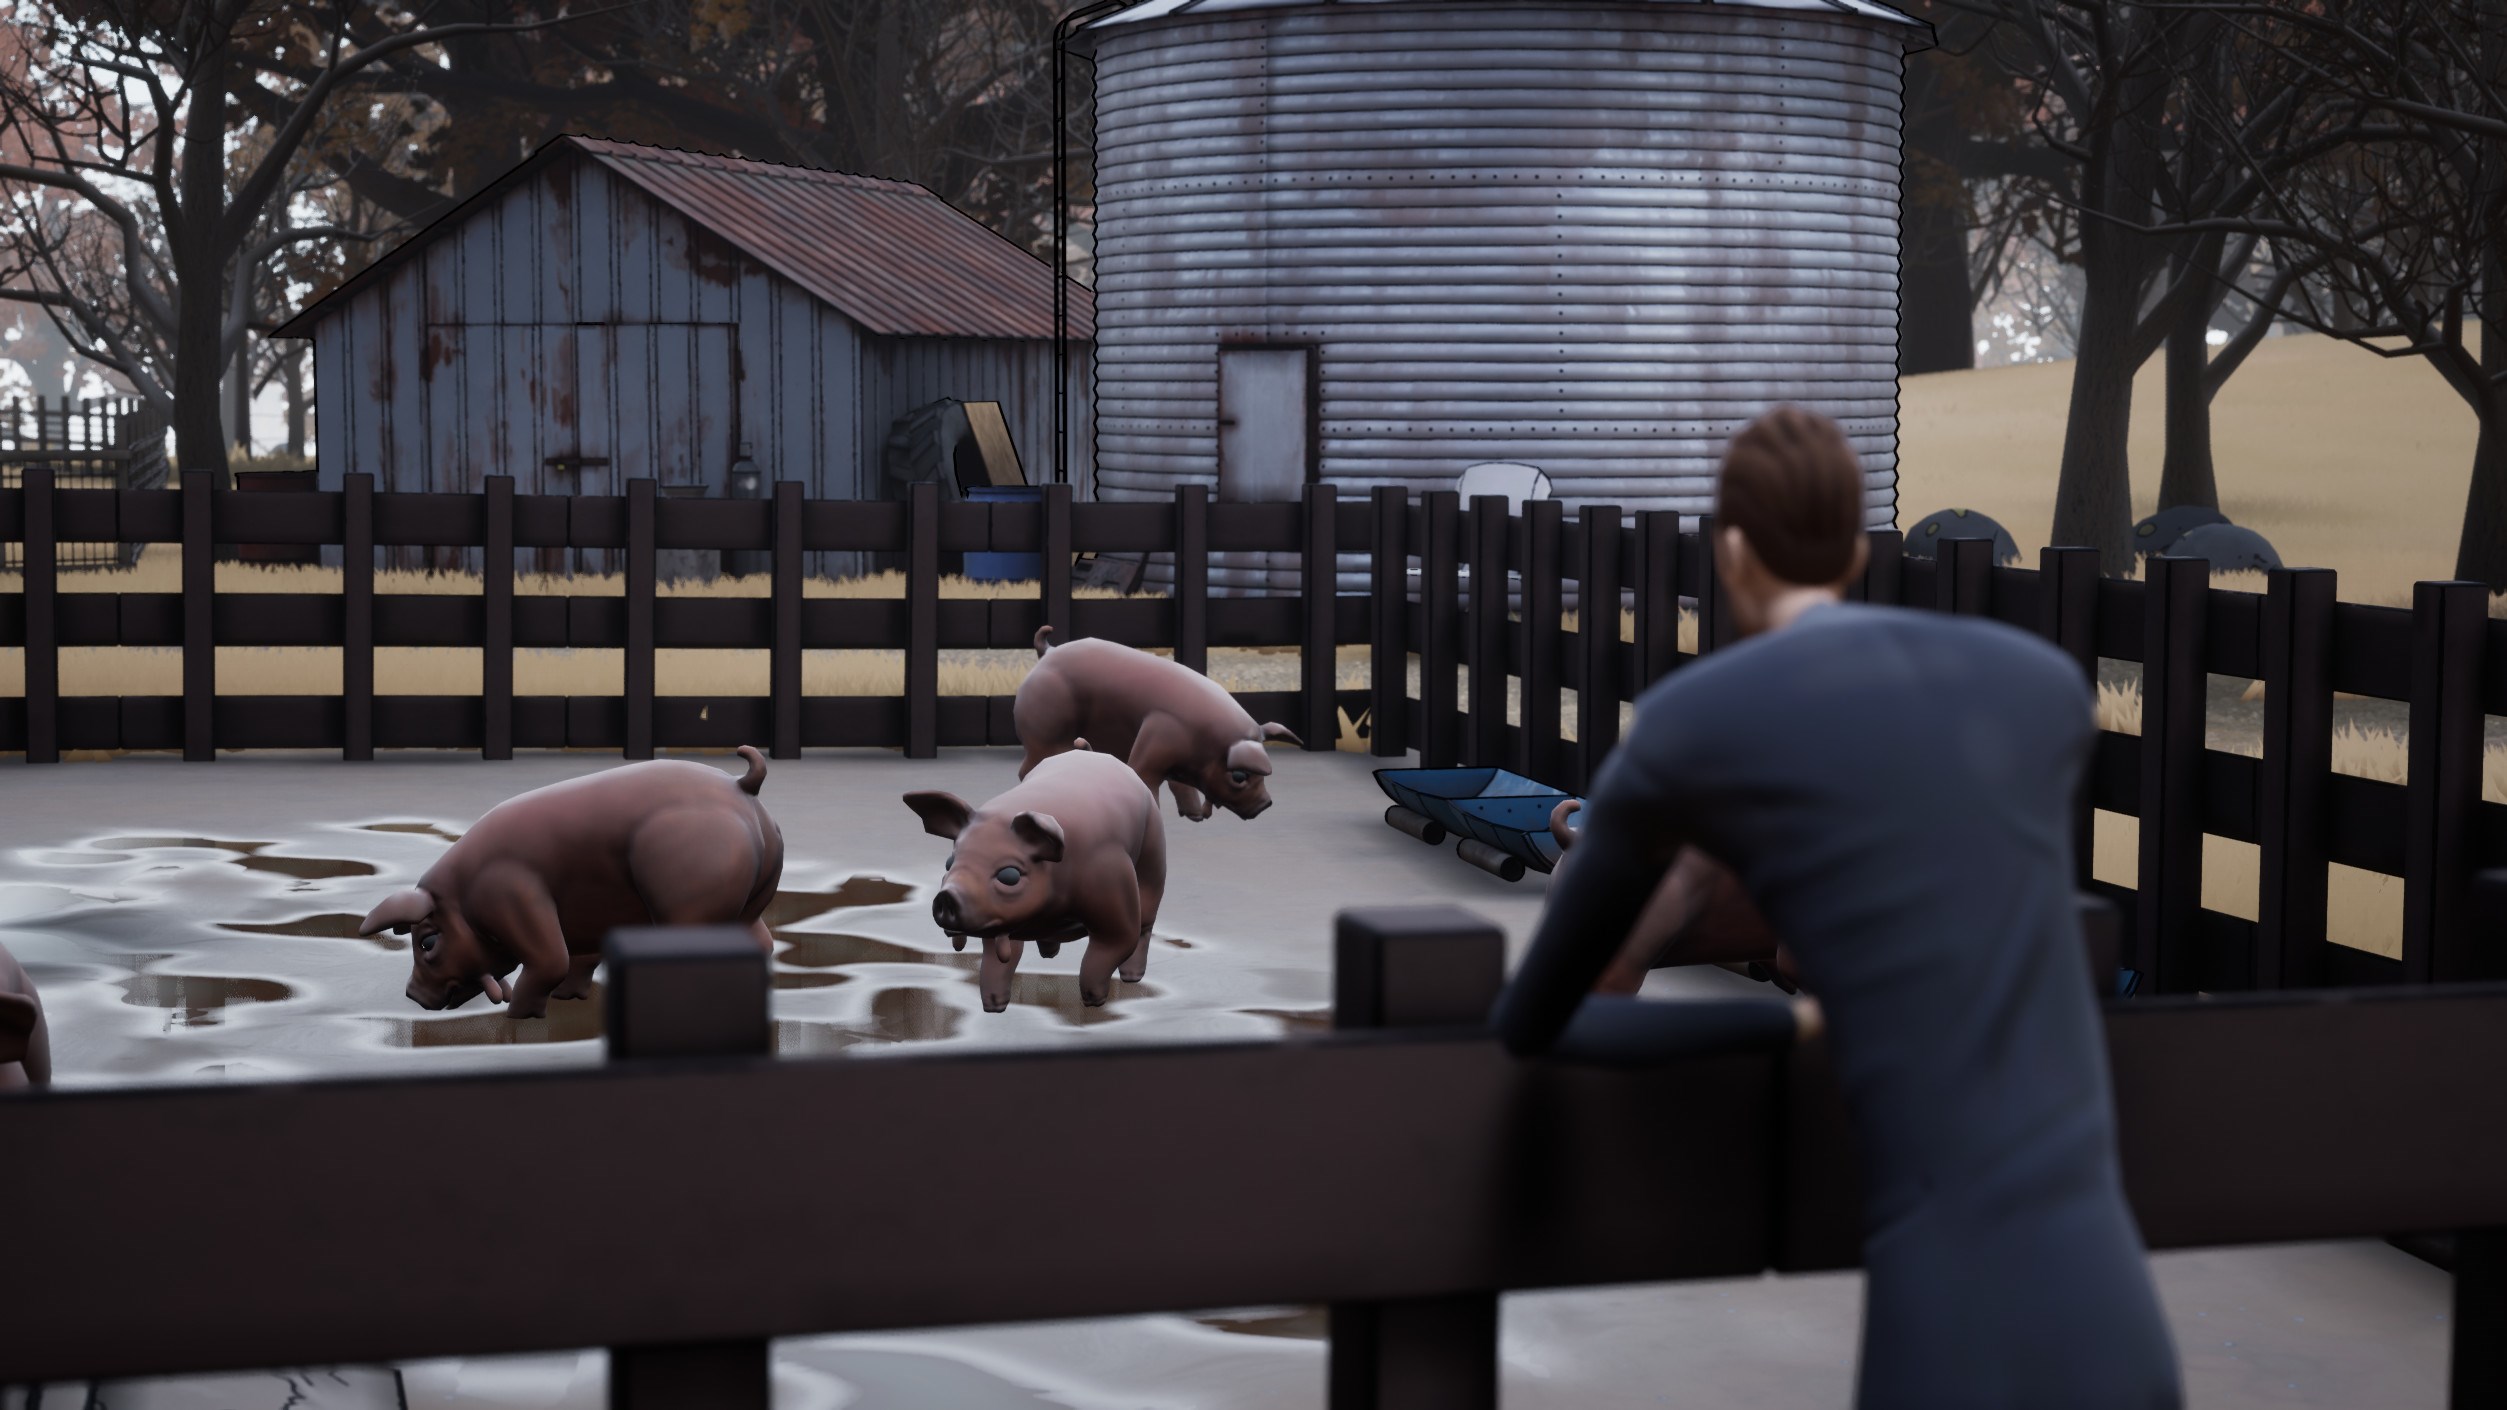 Pig farmer in Adios on Xbox